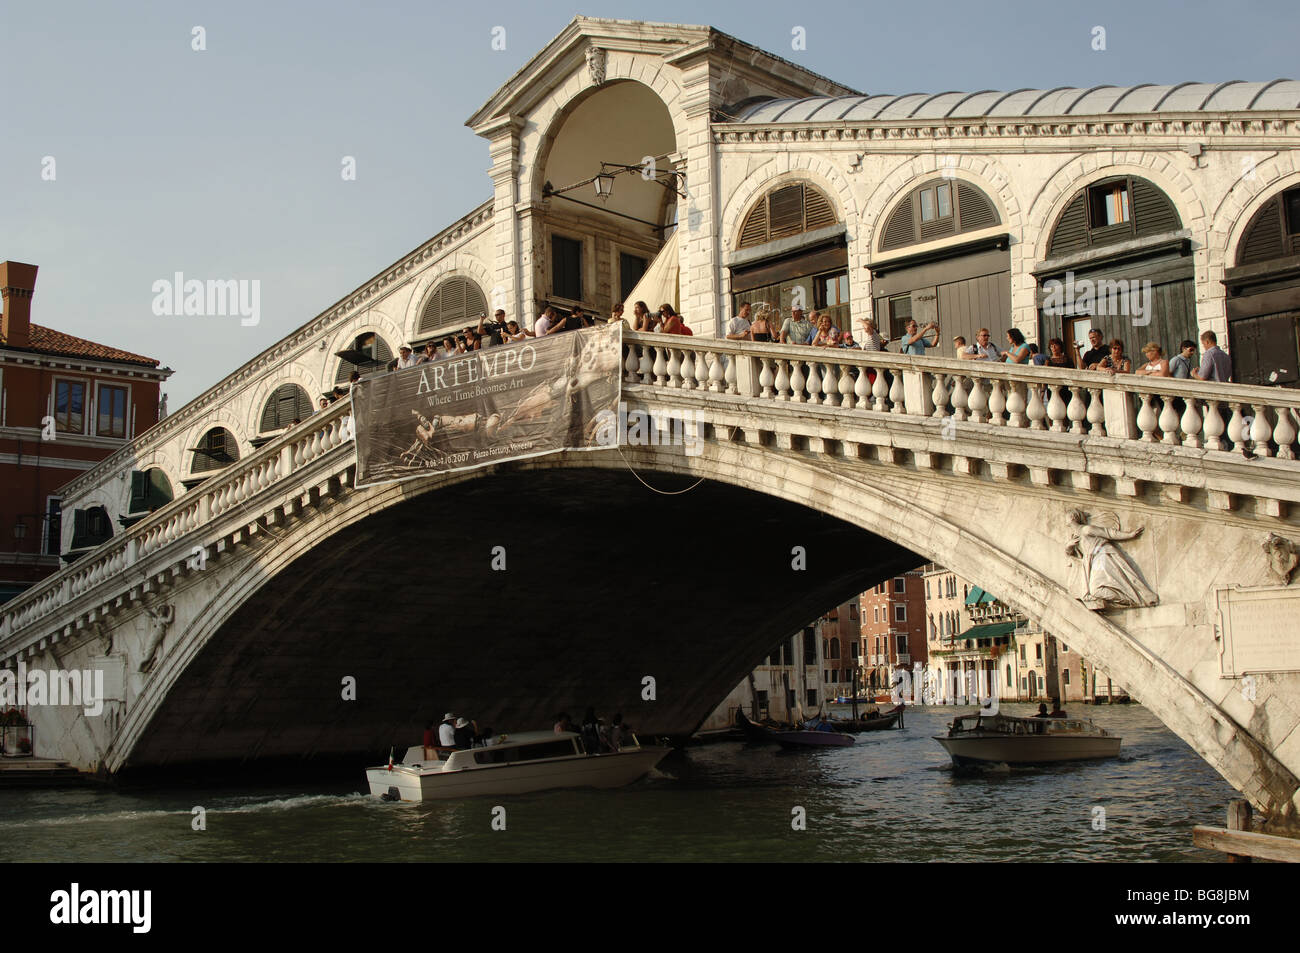 Italia. Venecia. Vista del Puente de Rialto en el Gran Canal, construido en el siglo XVI. Foto de stock